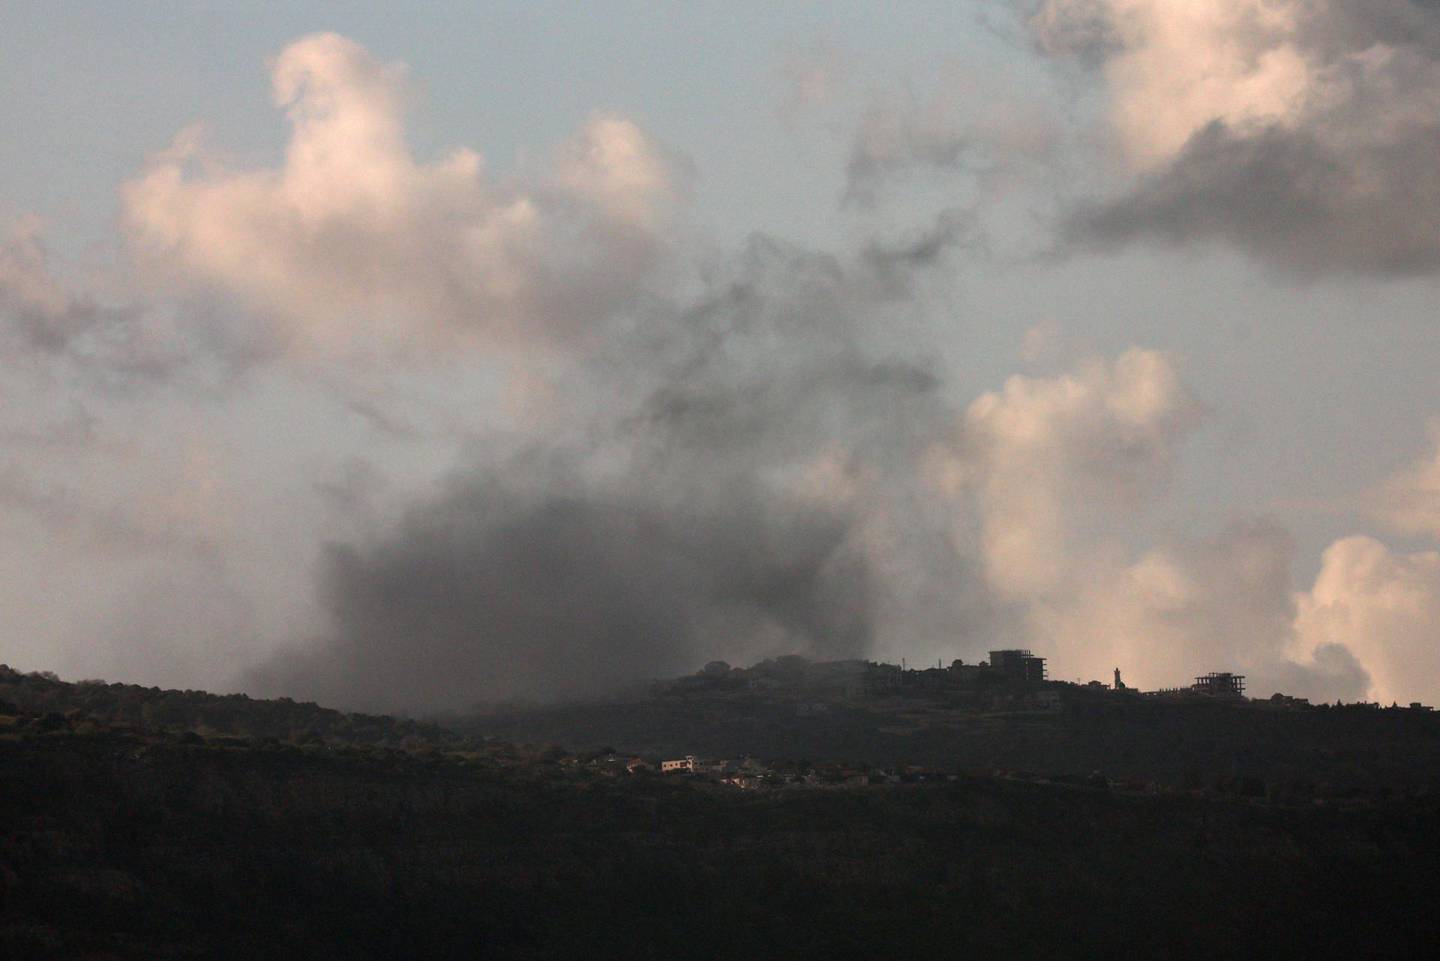 Imagen de archivo en la que puede verse el humo procedente de la aldea libanesa de Markaba tras un bombardeo israelí en el sur del Líbano. EFE/EPA/ATEF SAFADI